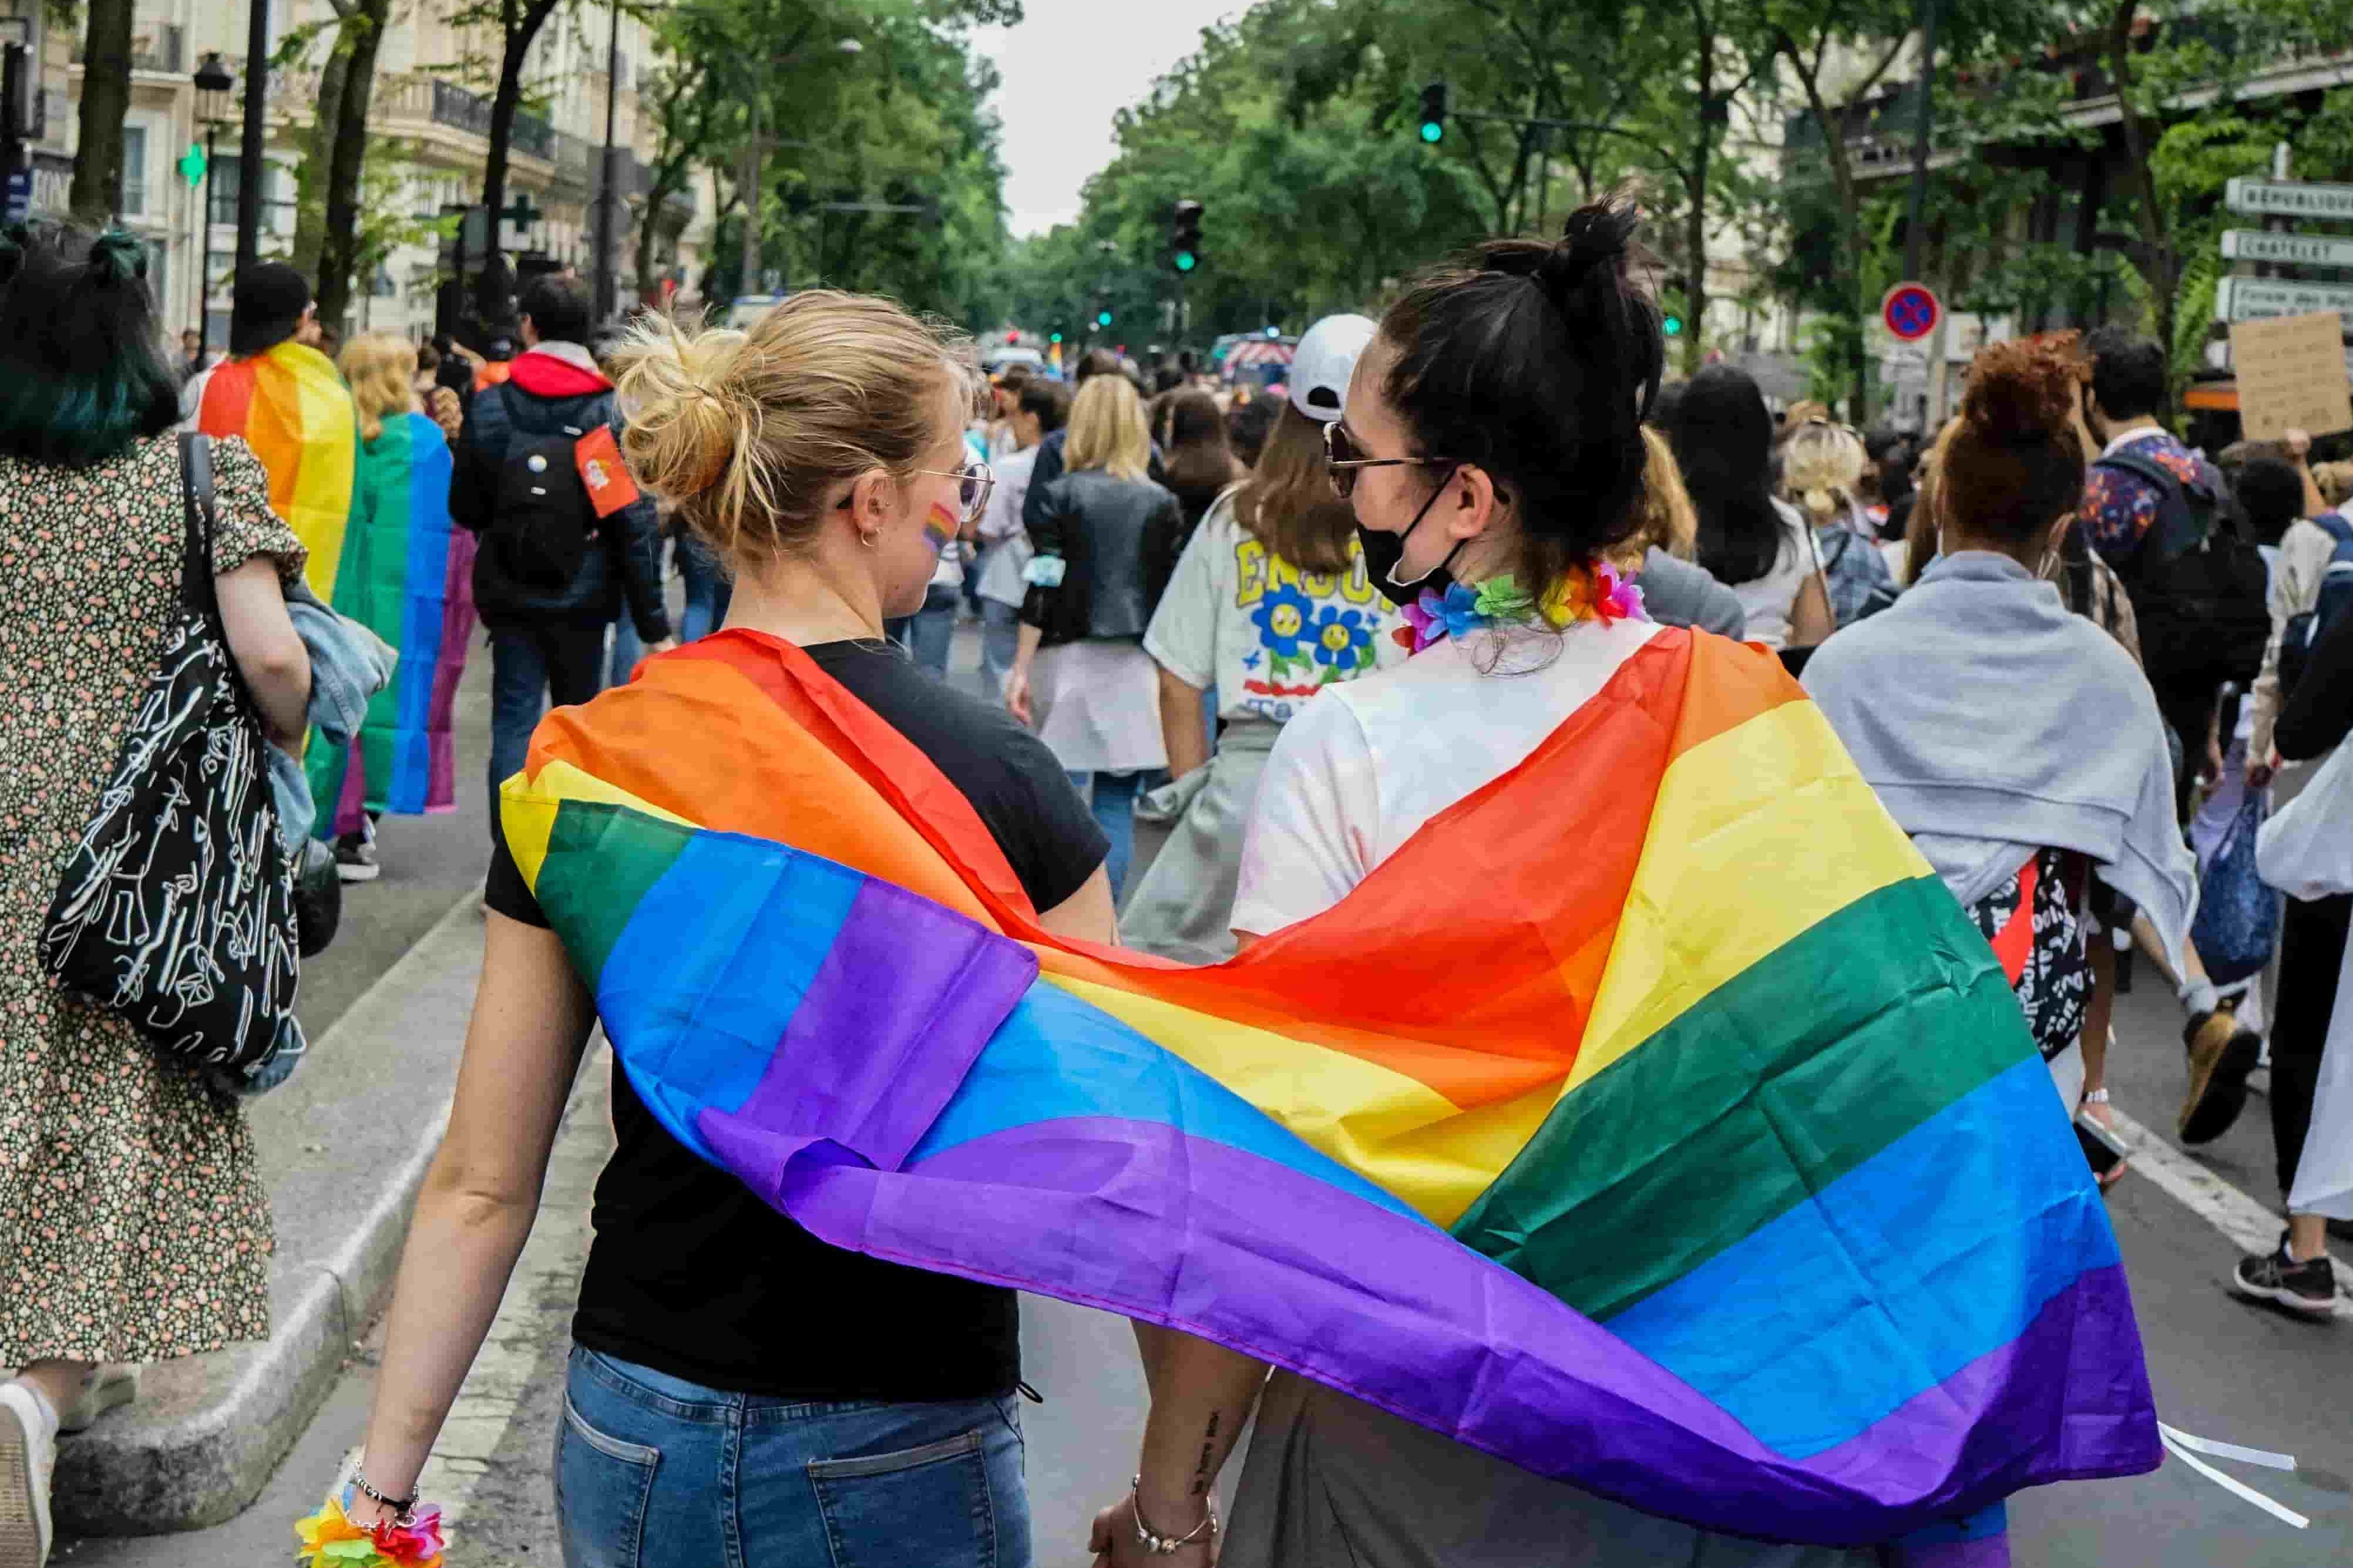 俄羅斯最高法院禁LGBT運動 聯合國人權專員籲停止歧視